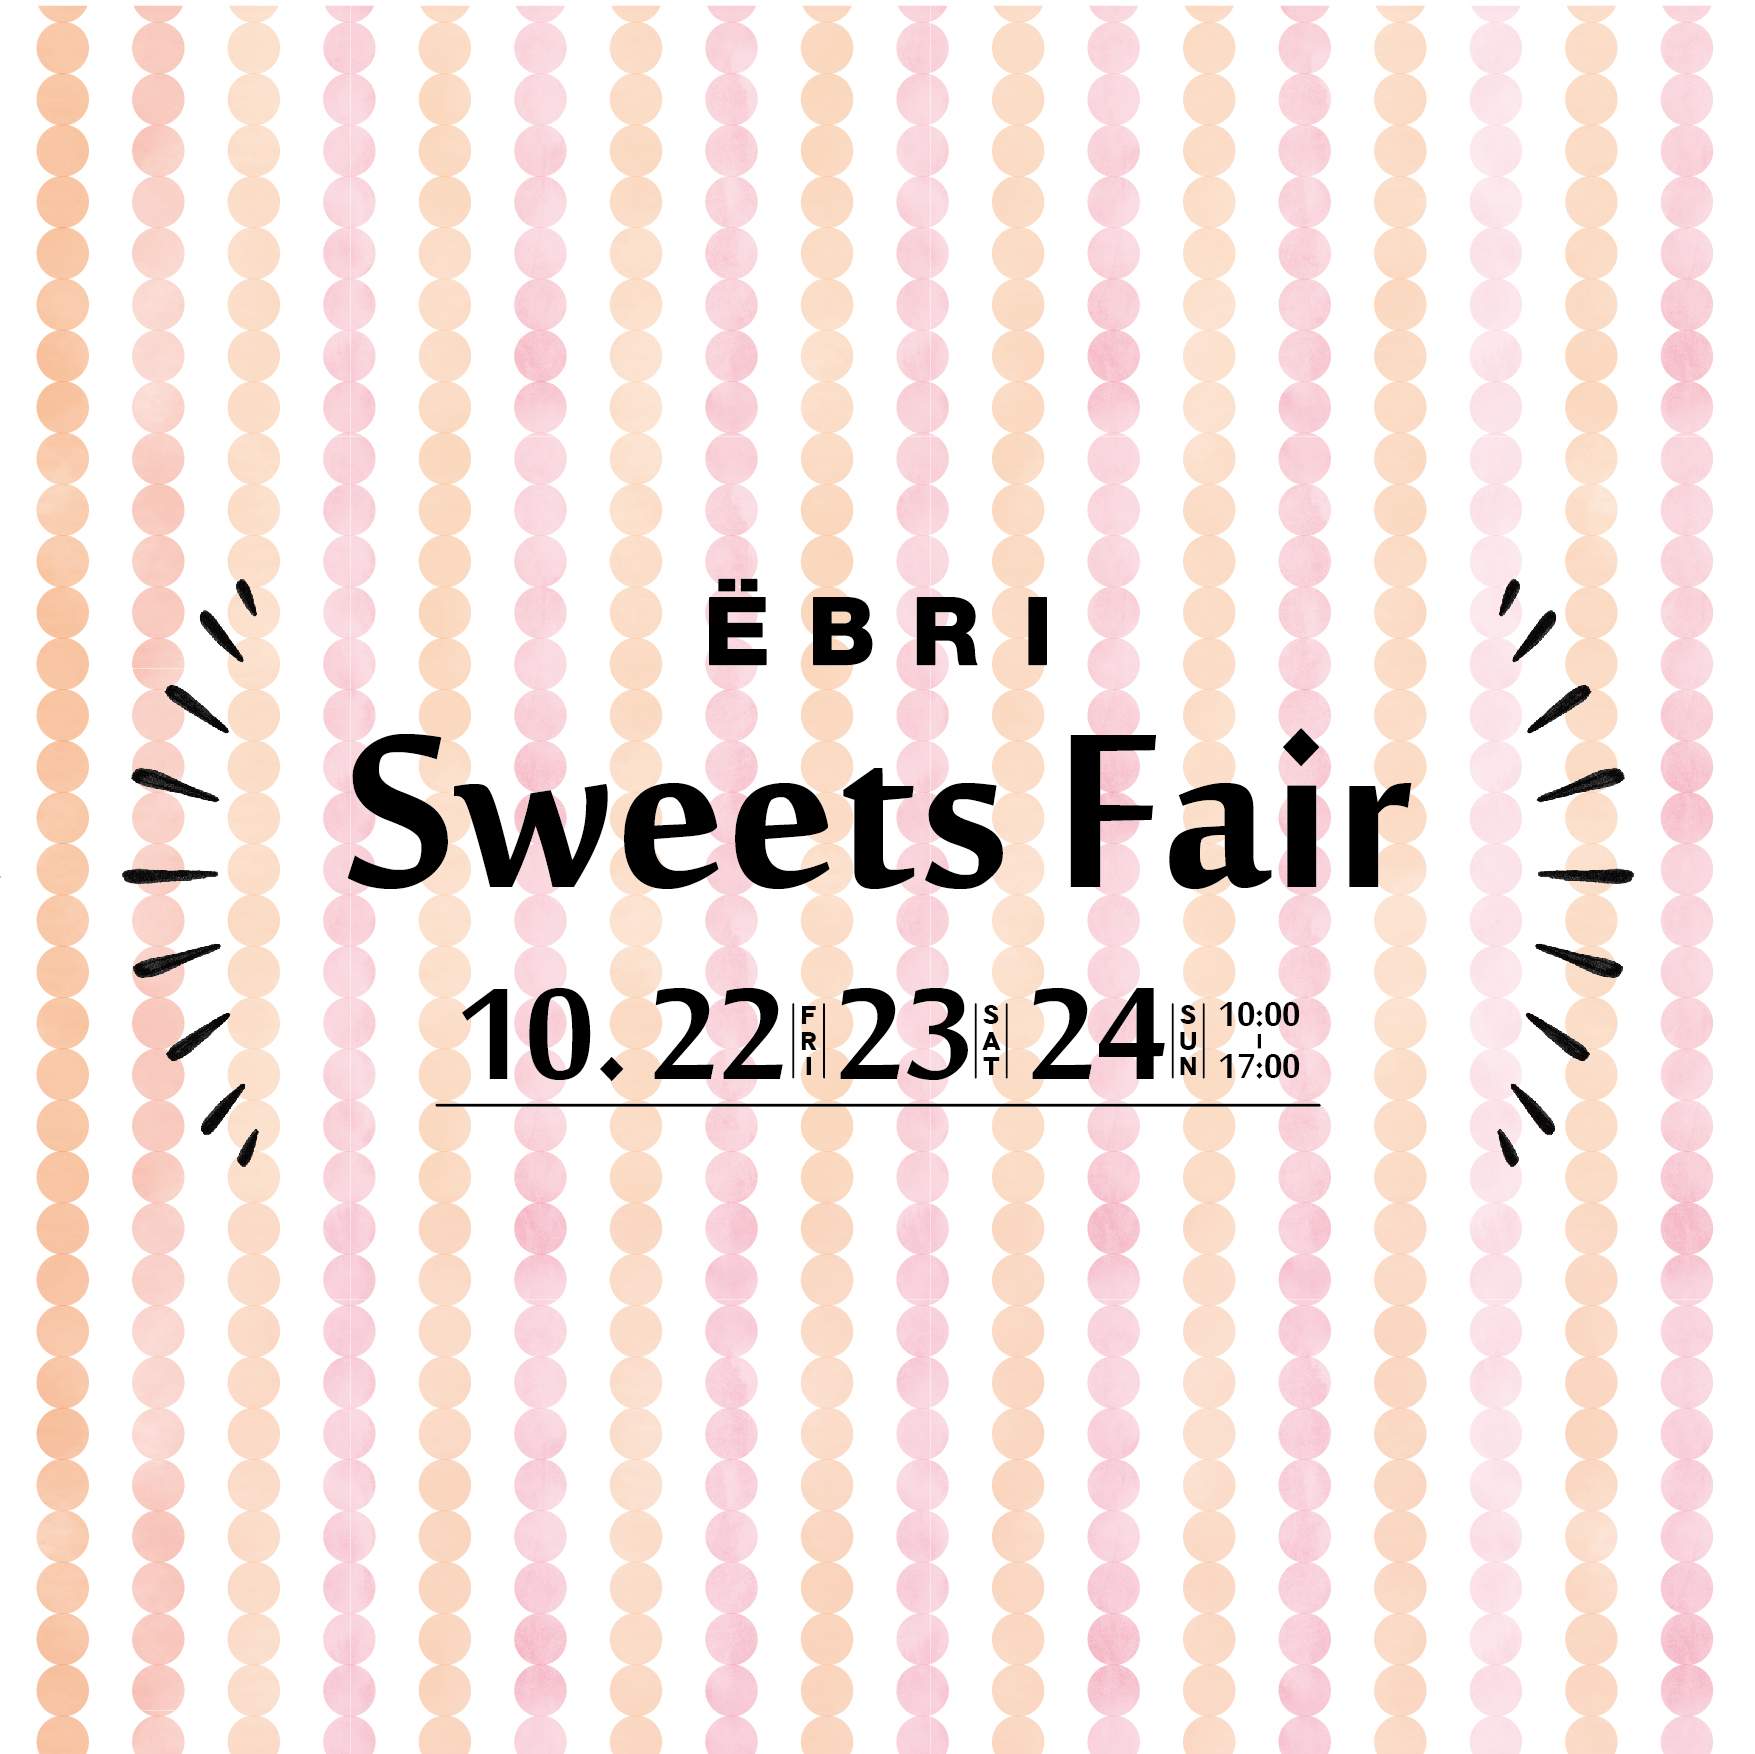 EBRI Sweets Fair